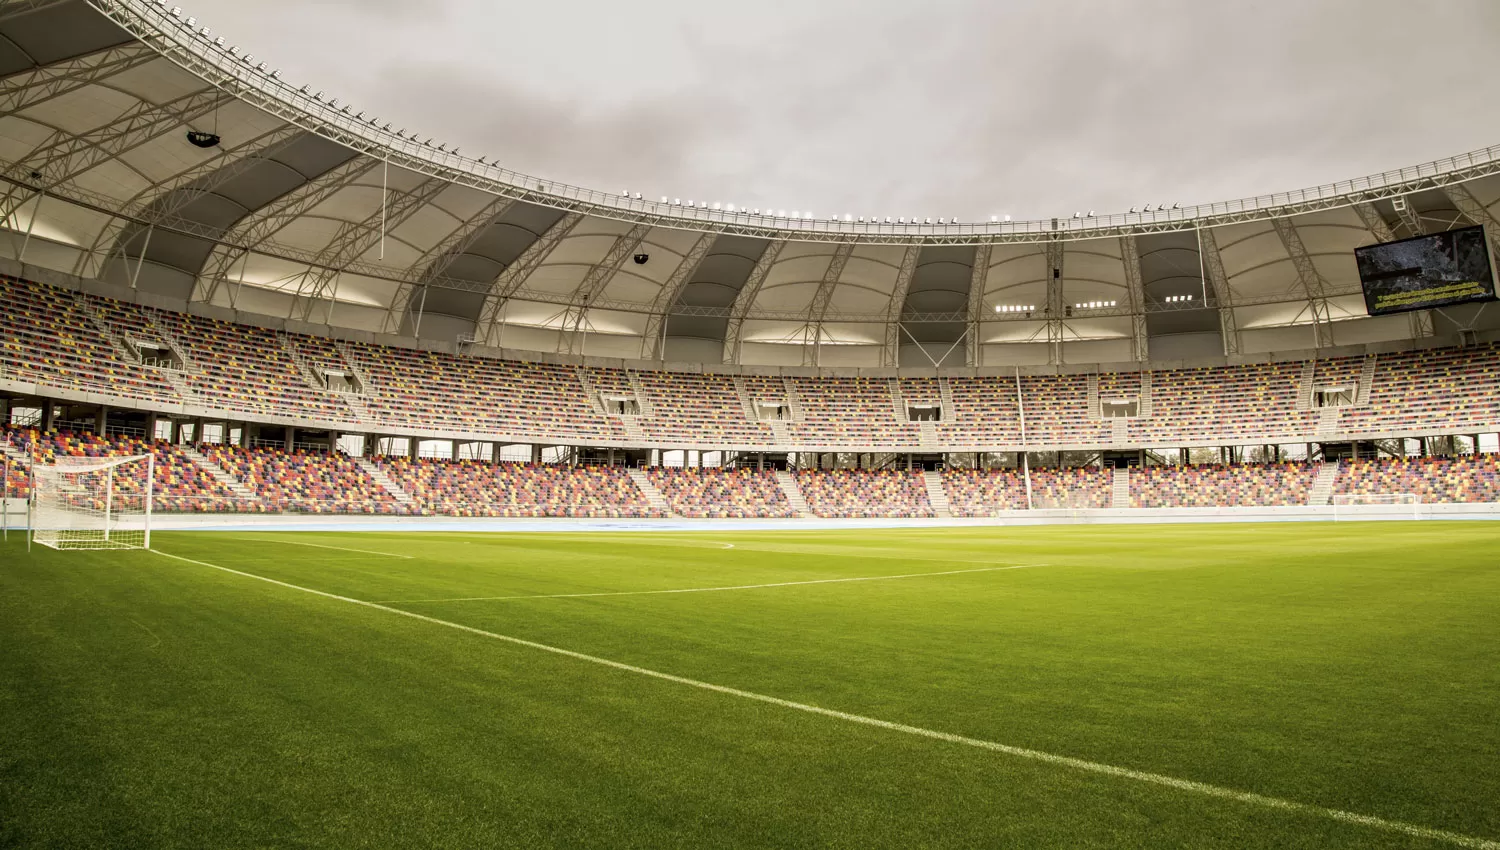 EN SANTIAGO. El partido entre Racing y River será el estreno oficial del Estadio Único de Santiago.